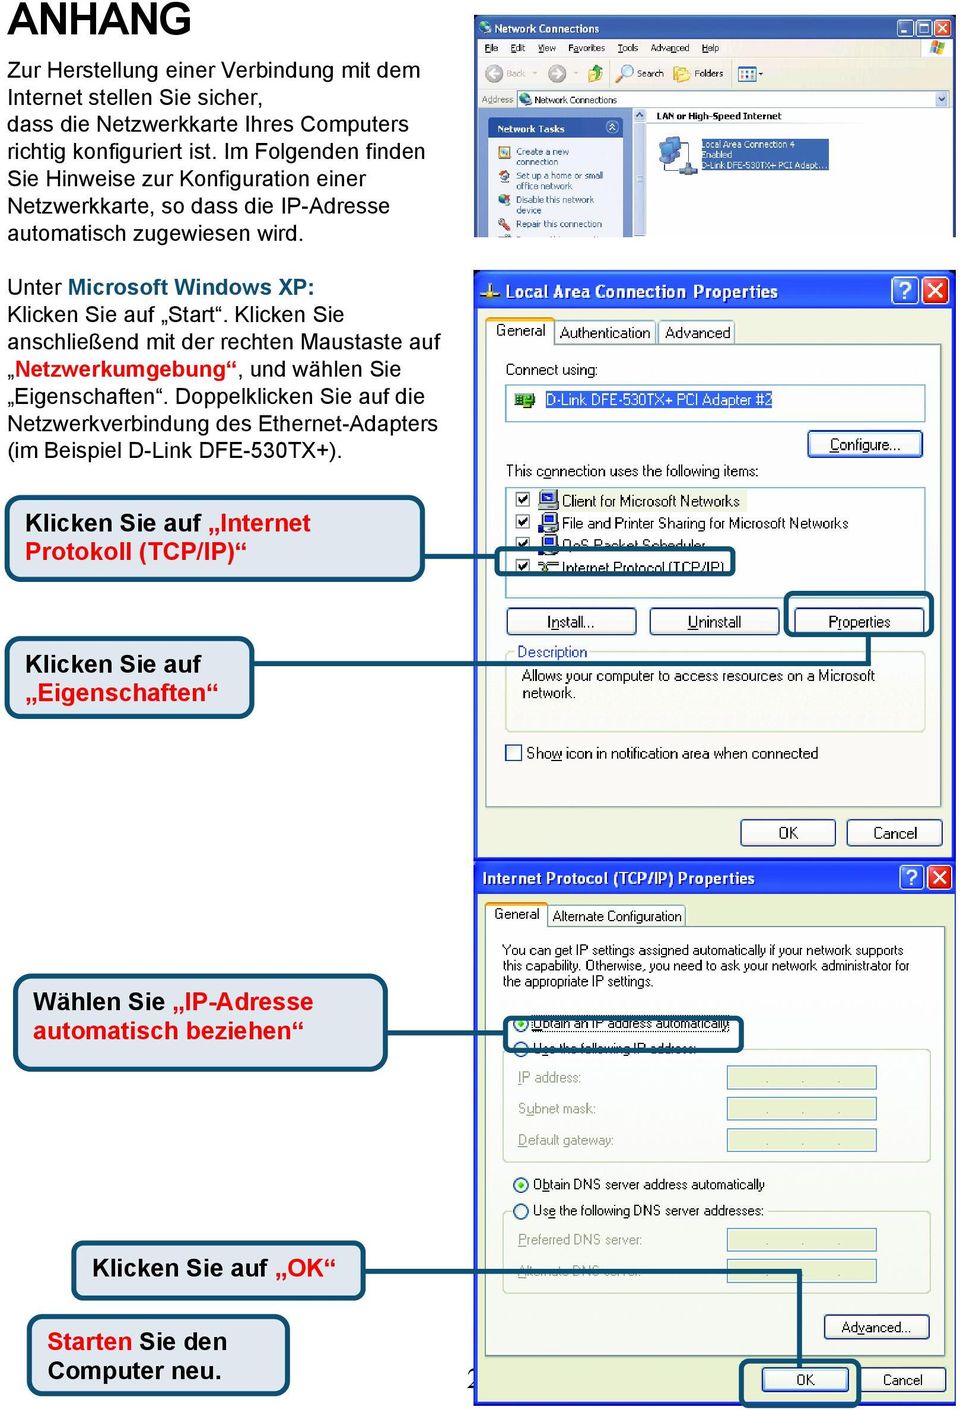 Unter Microsoft Windows XP: Start. Klicken Sie anschließend mit der rechten Maustaste auf Netzwerkumgebung, und wählen Sie Eigenschaften.